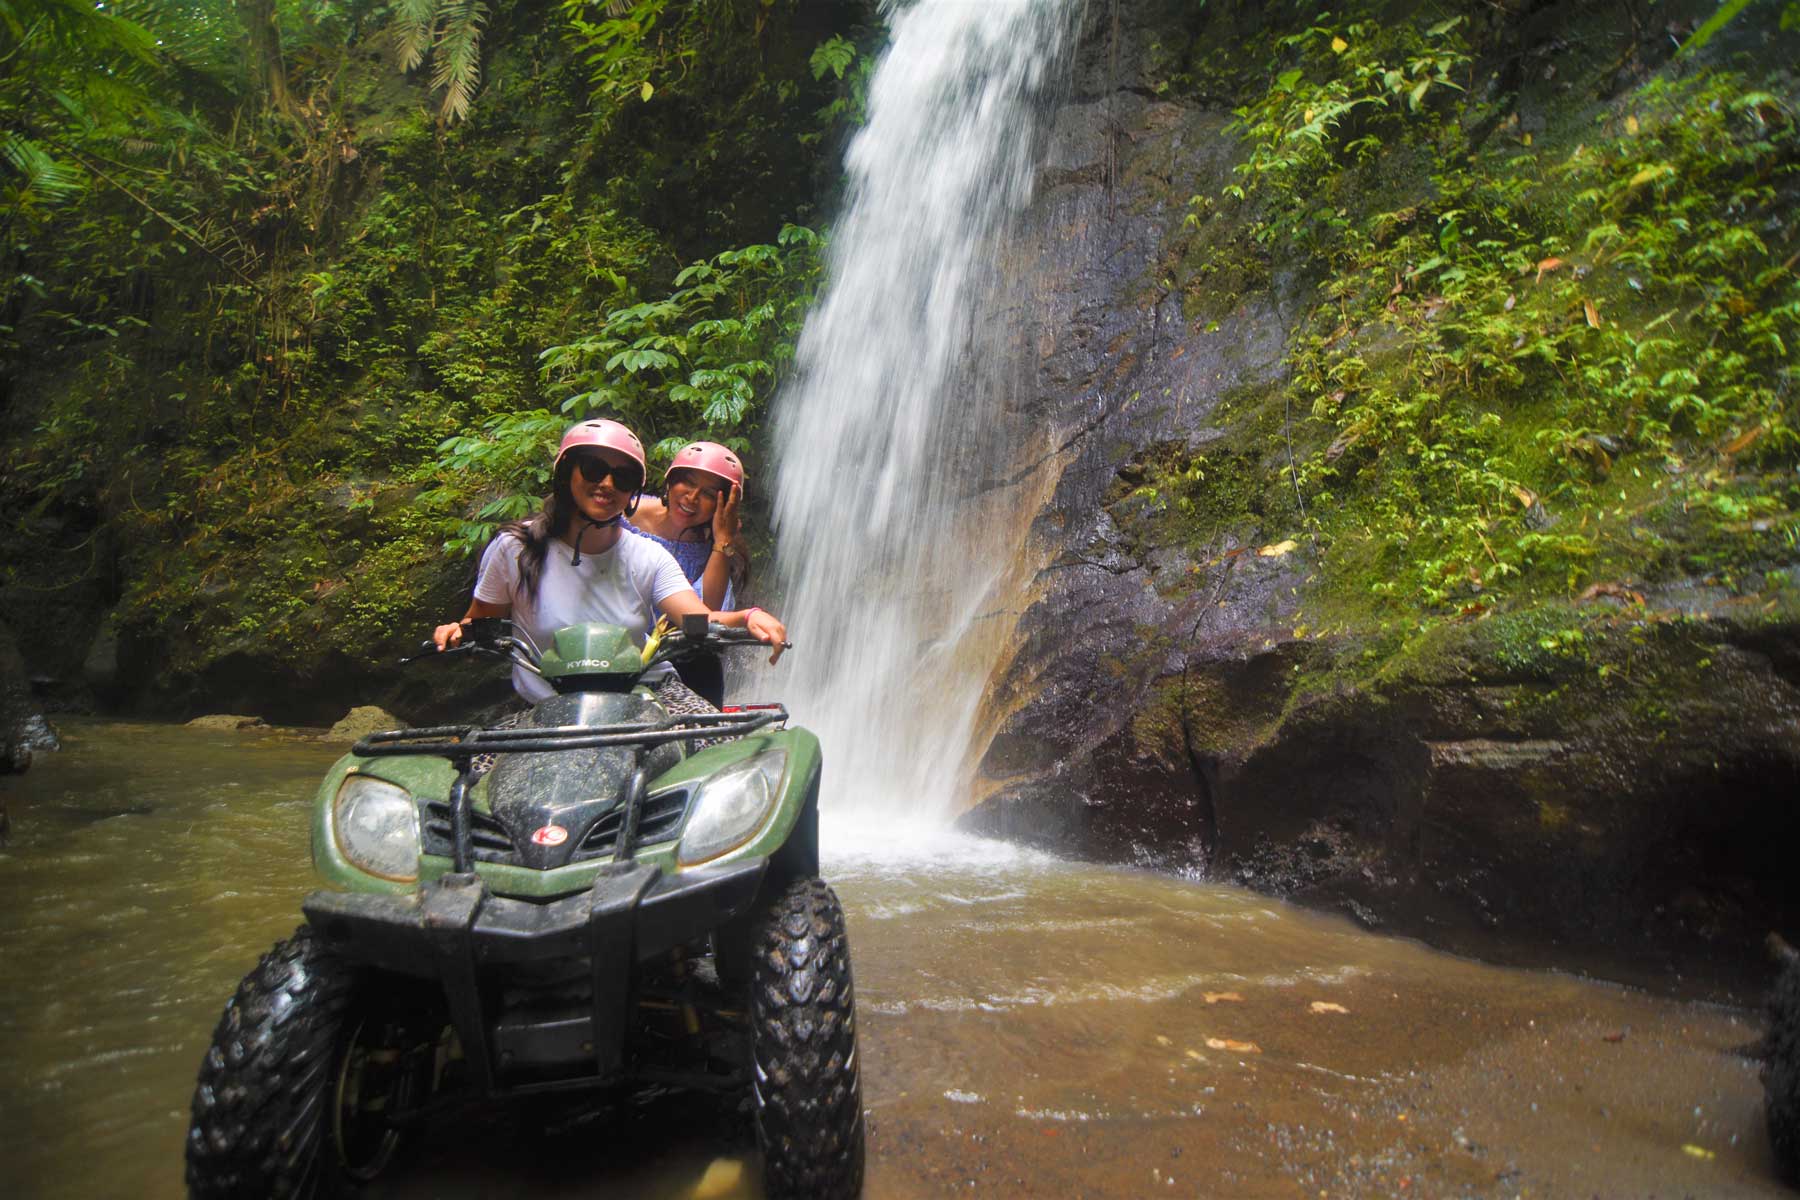 Kuber ATV Bali Adventure - Waterfall, activities in bali